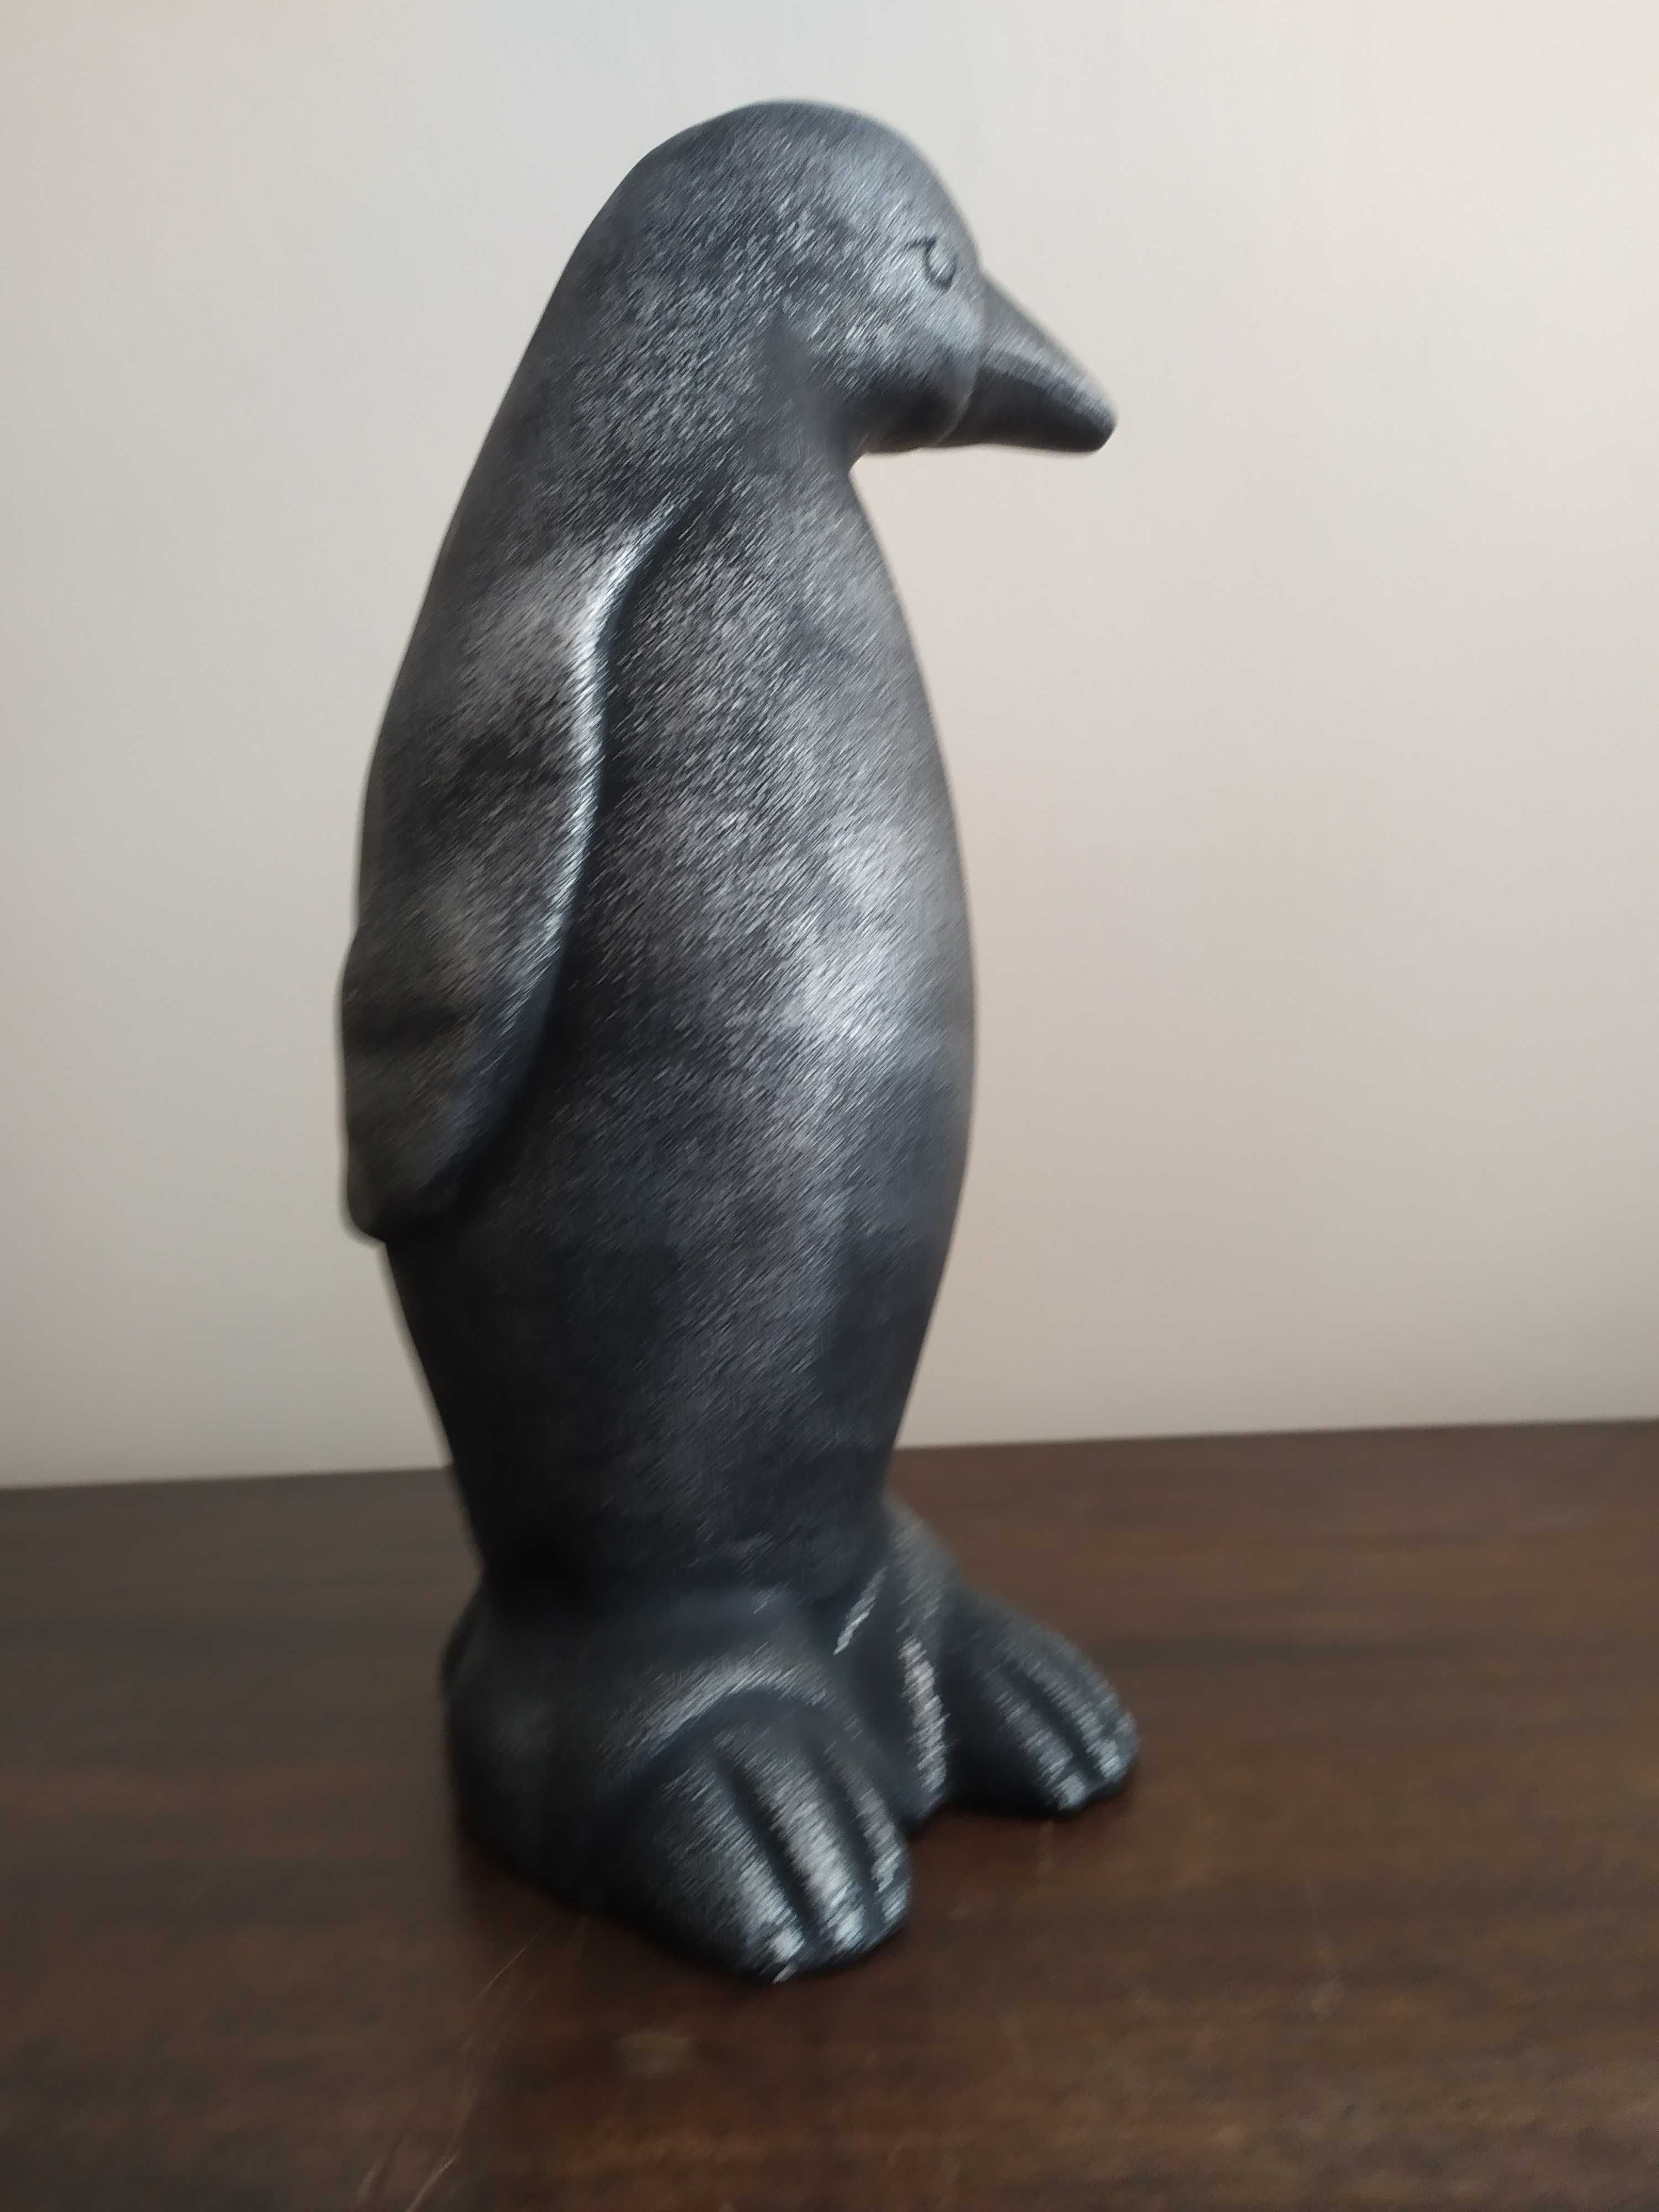 Ceramiczna figurka Pingwina, Rzeźba naturalnych rozmiarów